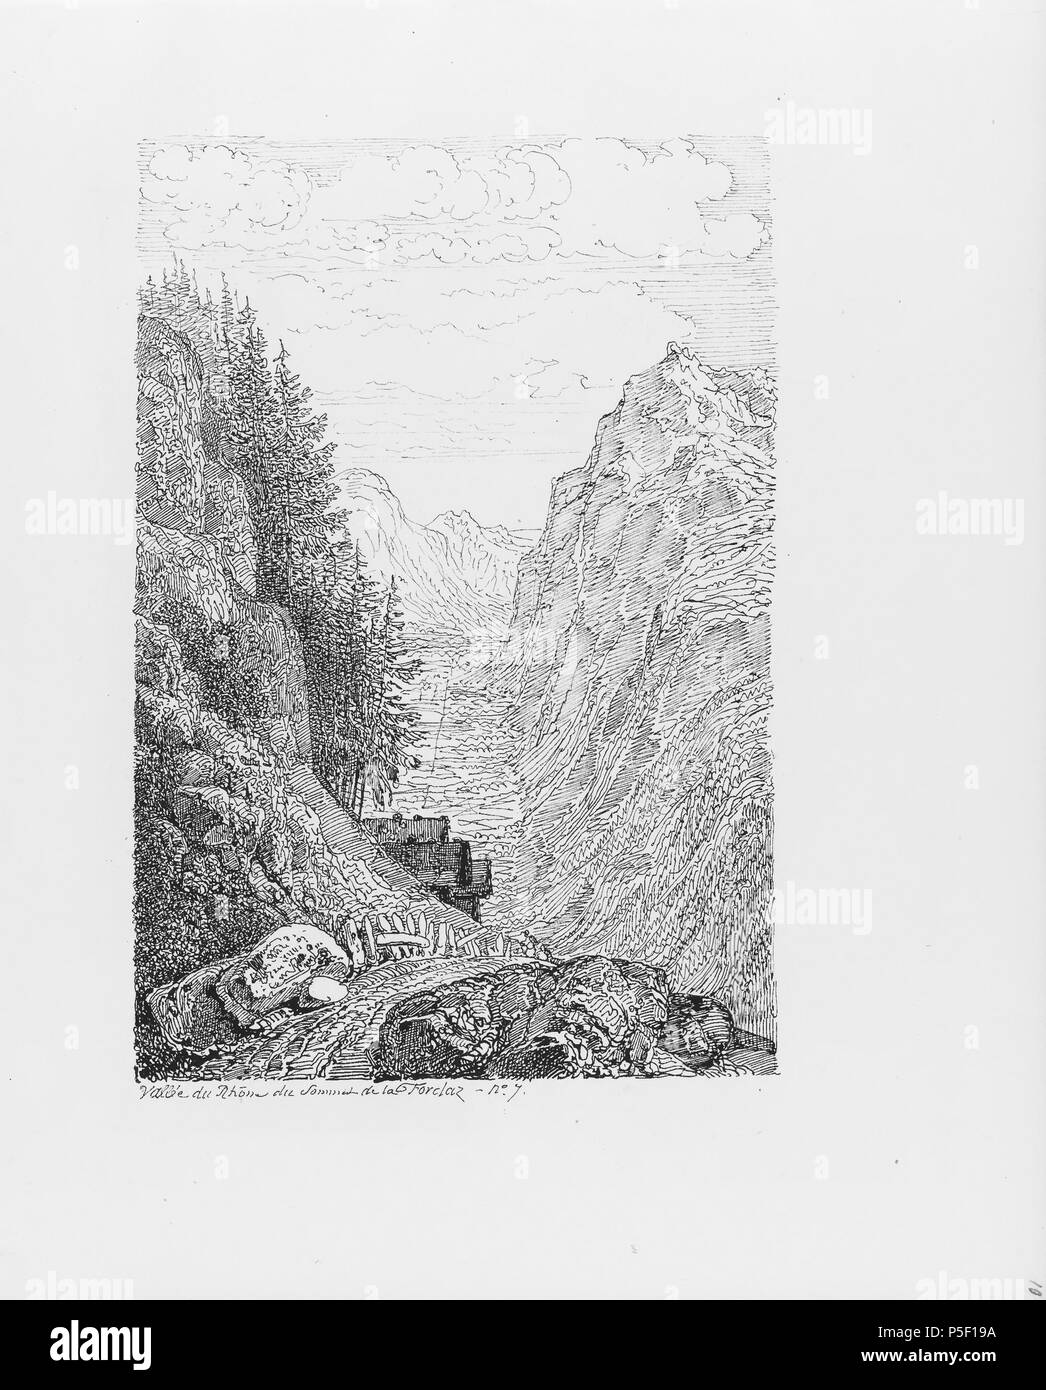 322 CH-NB-Voyage autour du Mont-Blanc dans les vallées d'Hérens de Zermatt et au Grimsel 1843-nbdig-19161-009 Stock Photo